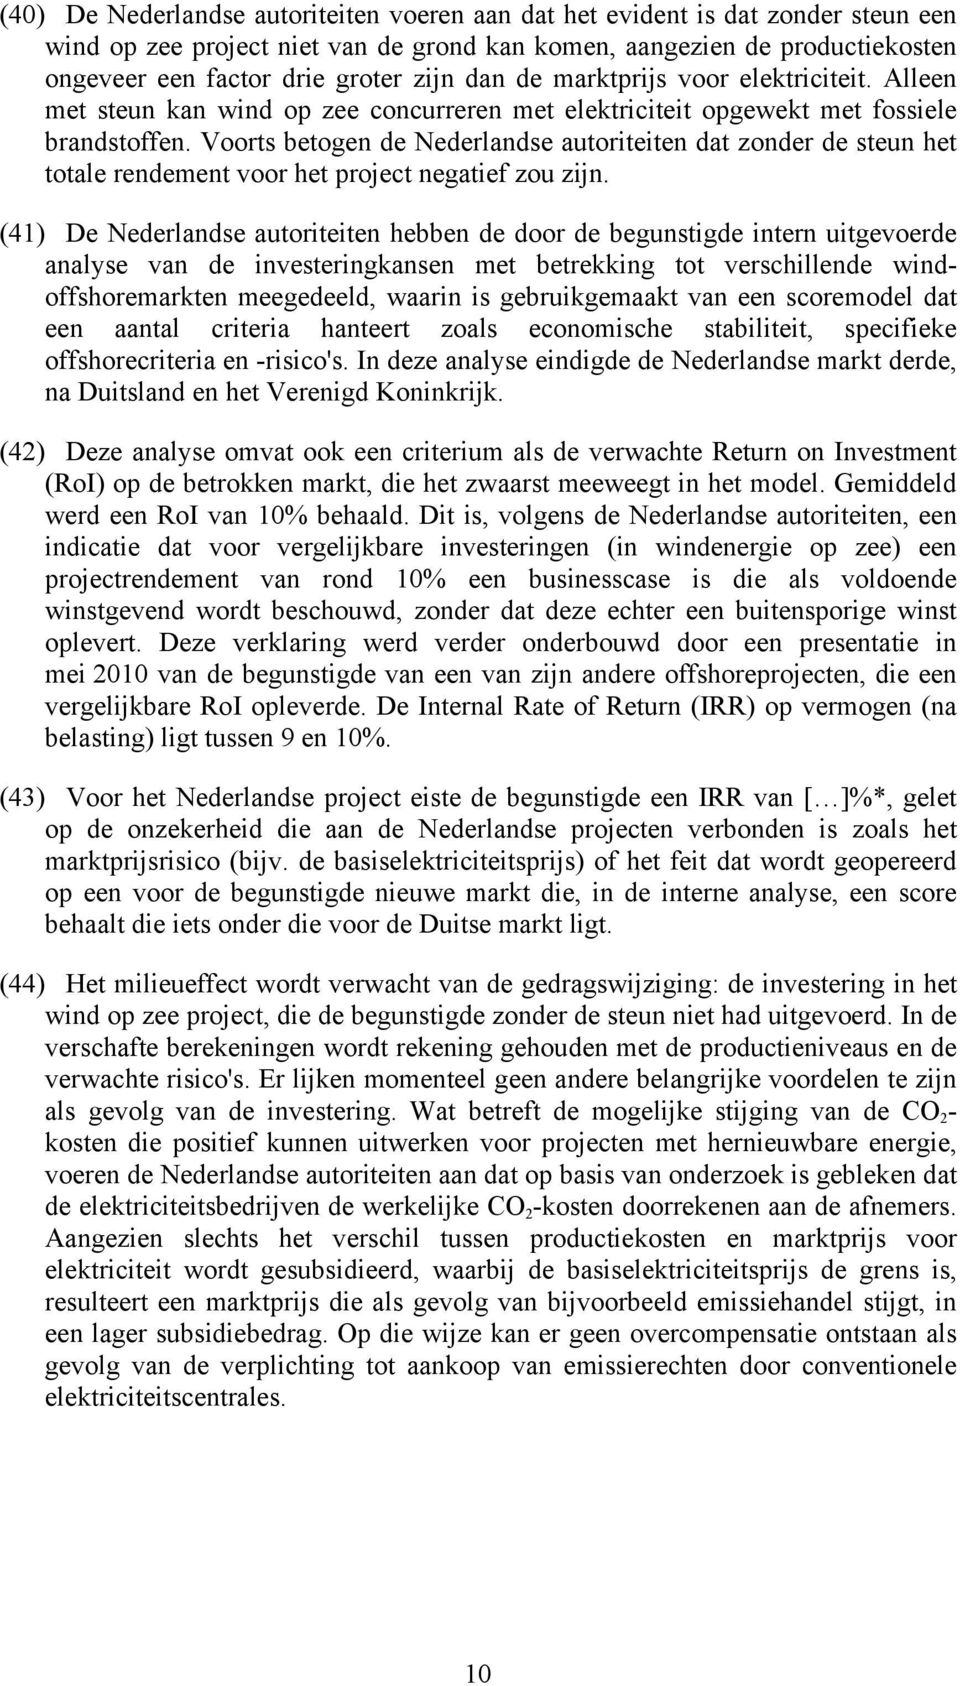 Voorts betogen de Nederlandse autoriteiten dat zonder de steun het totale rendement voor het project negatief zou zijn.